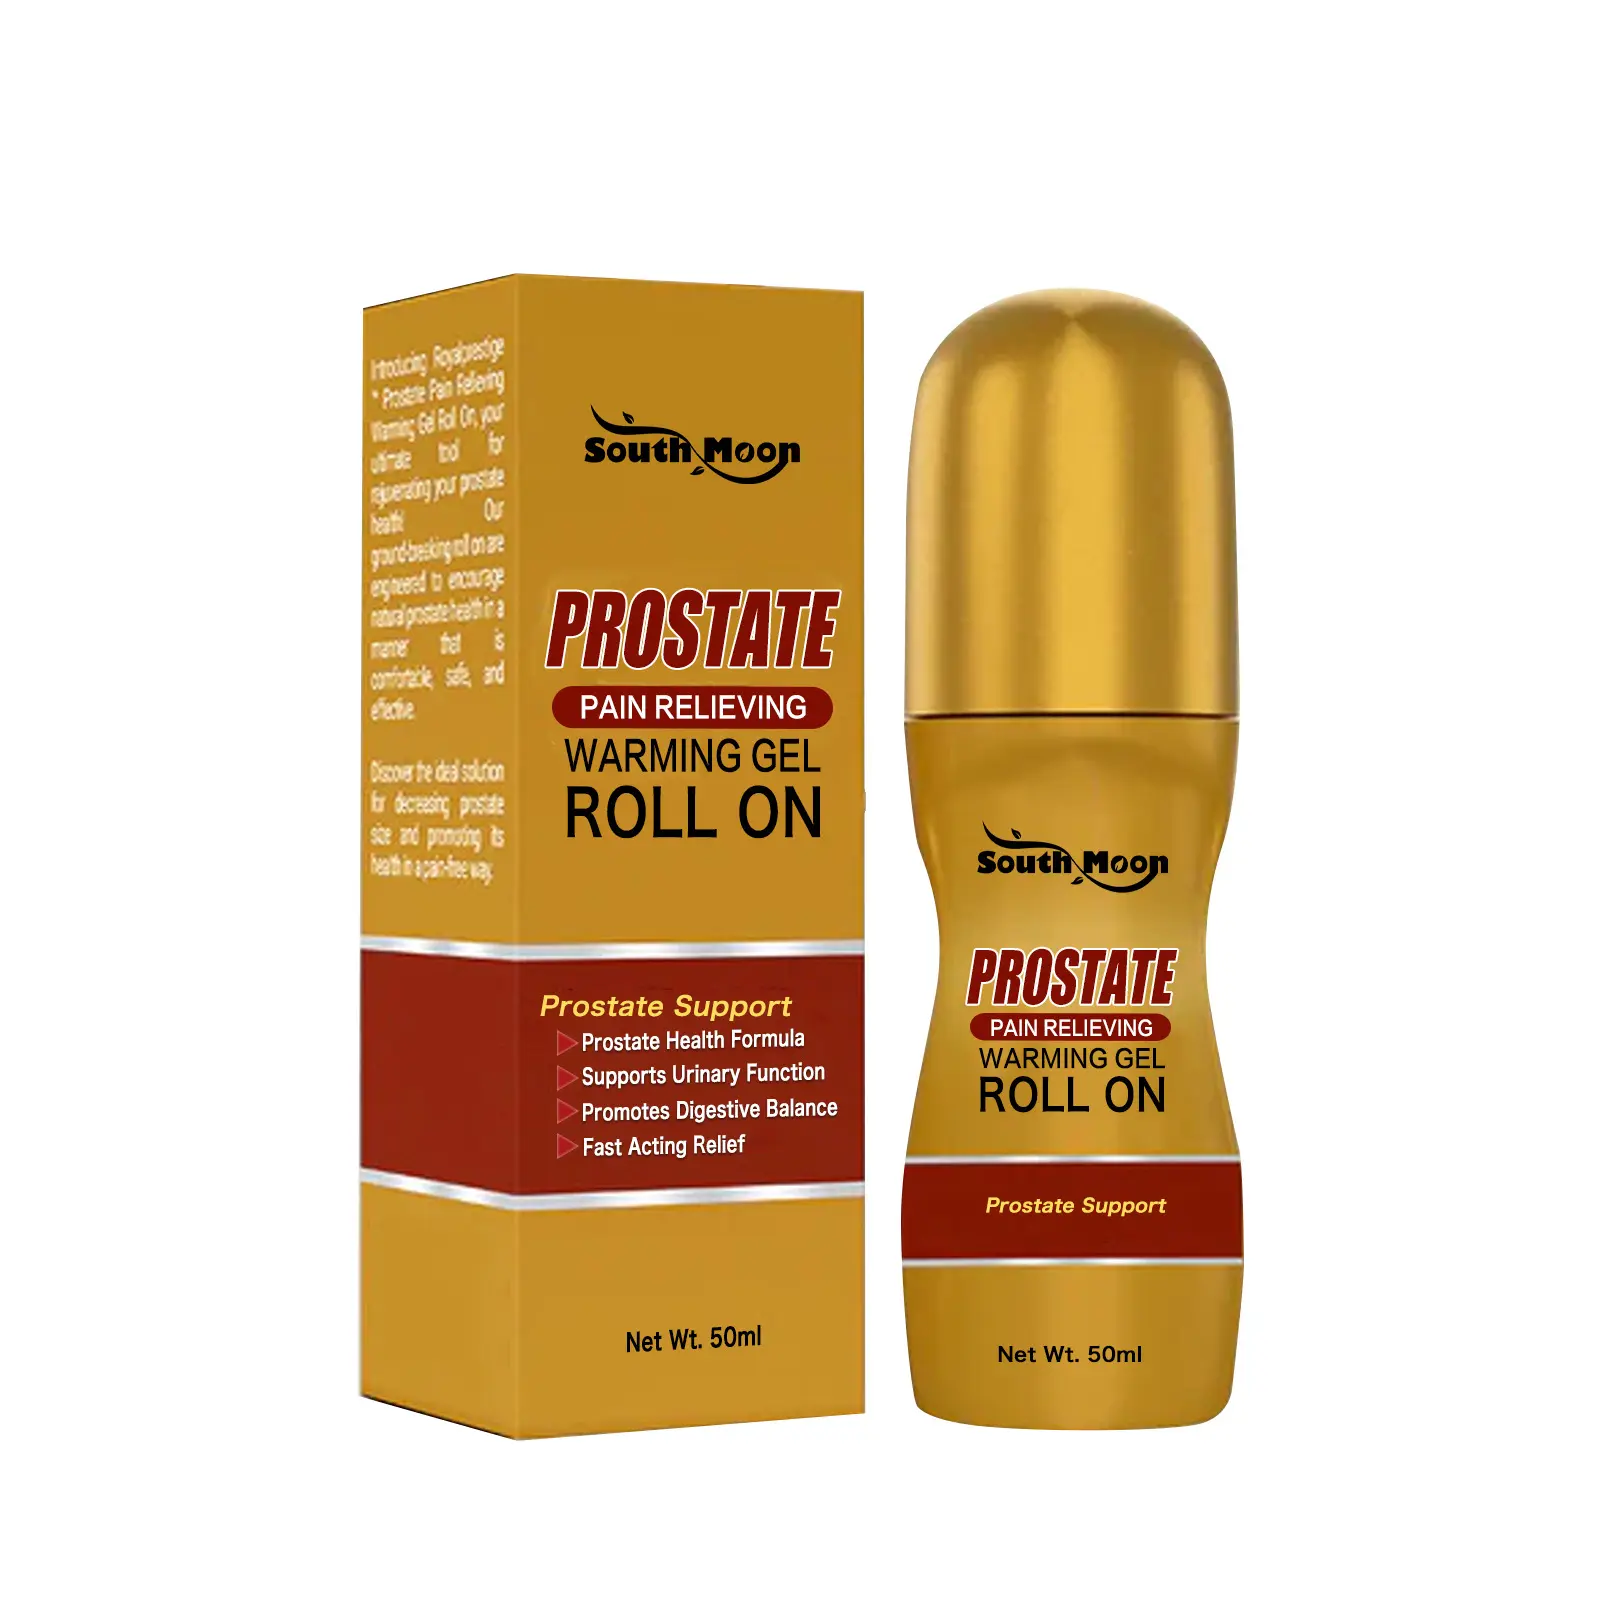 South Moon Próstata Dor Aliviar Aquecimento Gel Prostate Health Formula, Apoiar a Função Urinária e Promove o Equilíbrio Digestivo